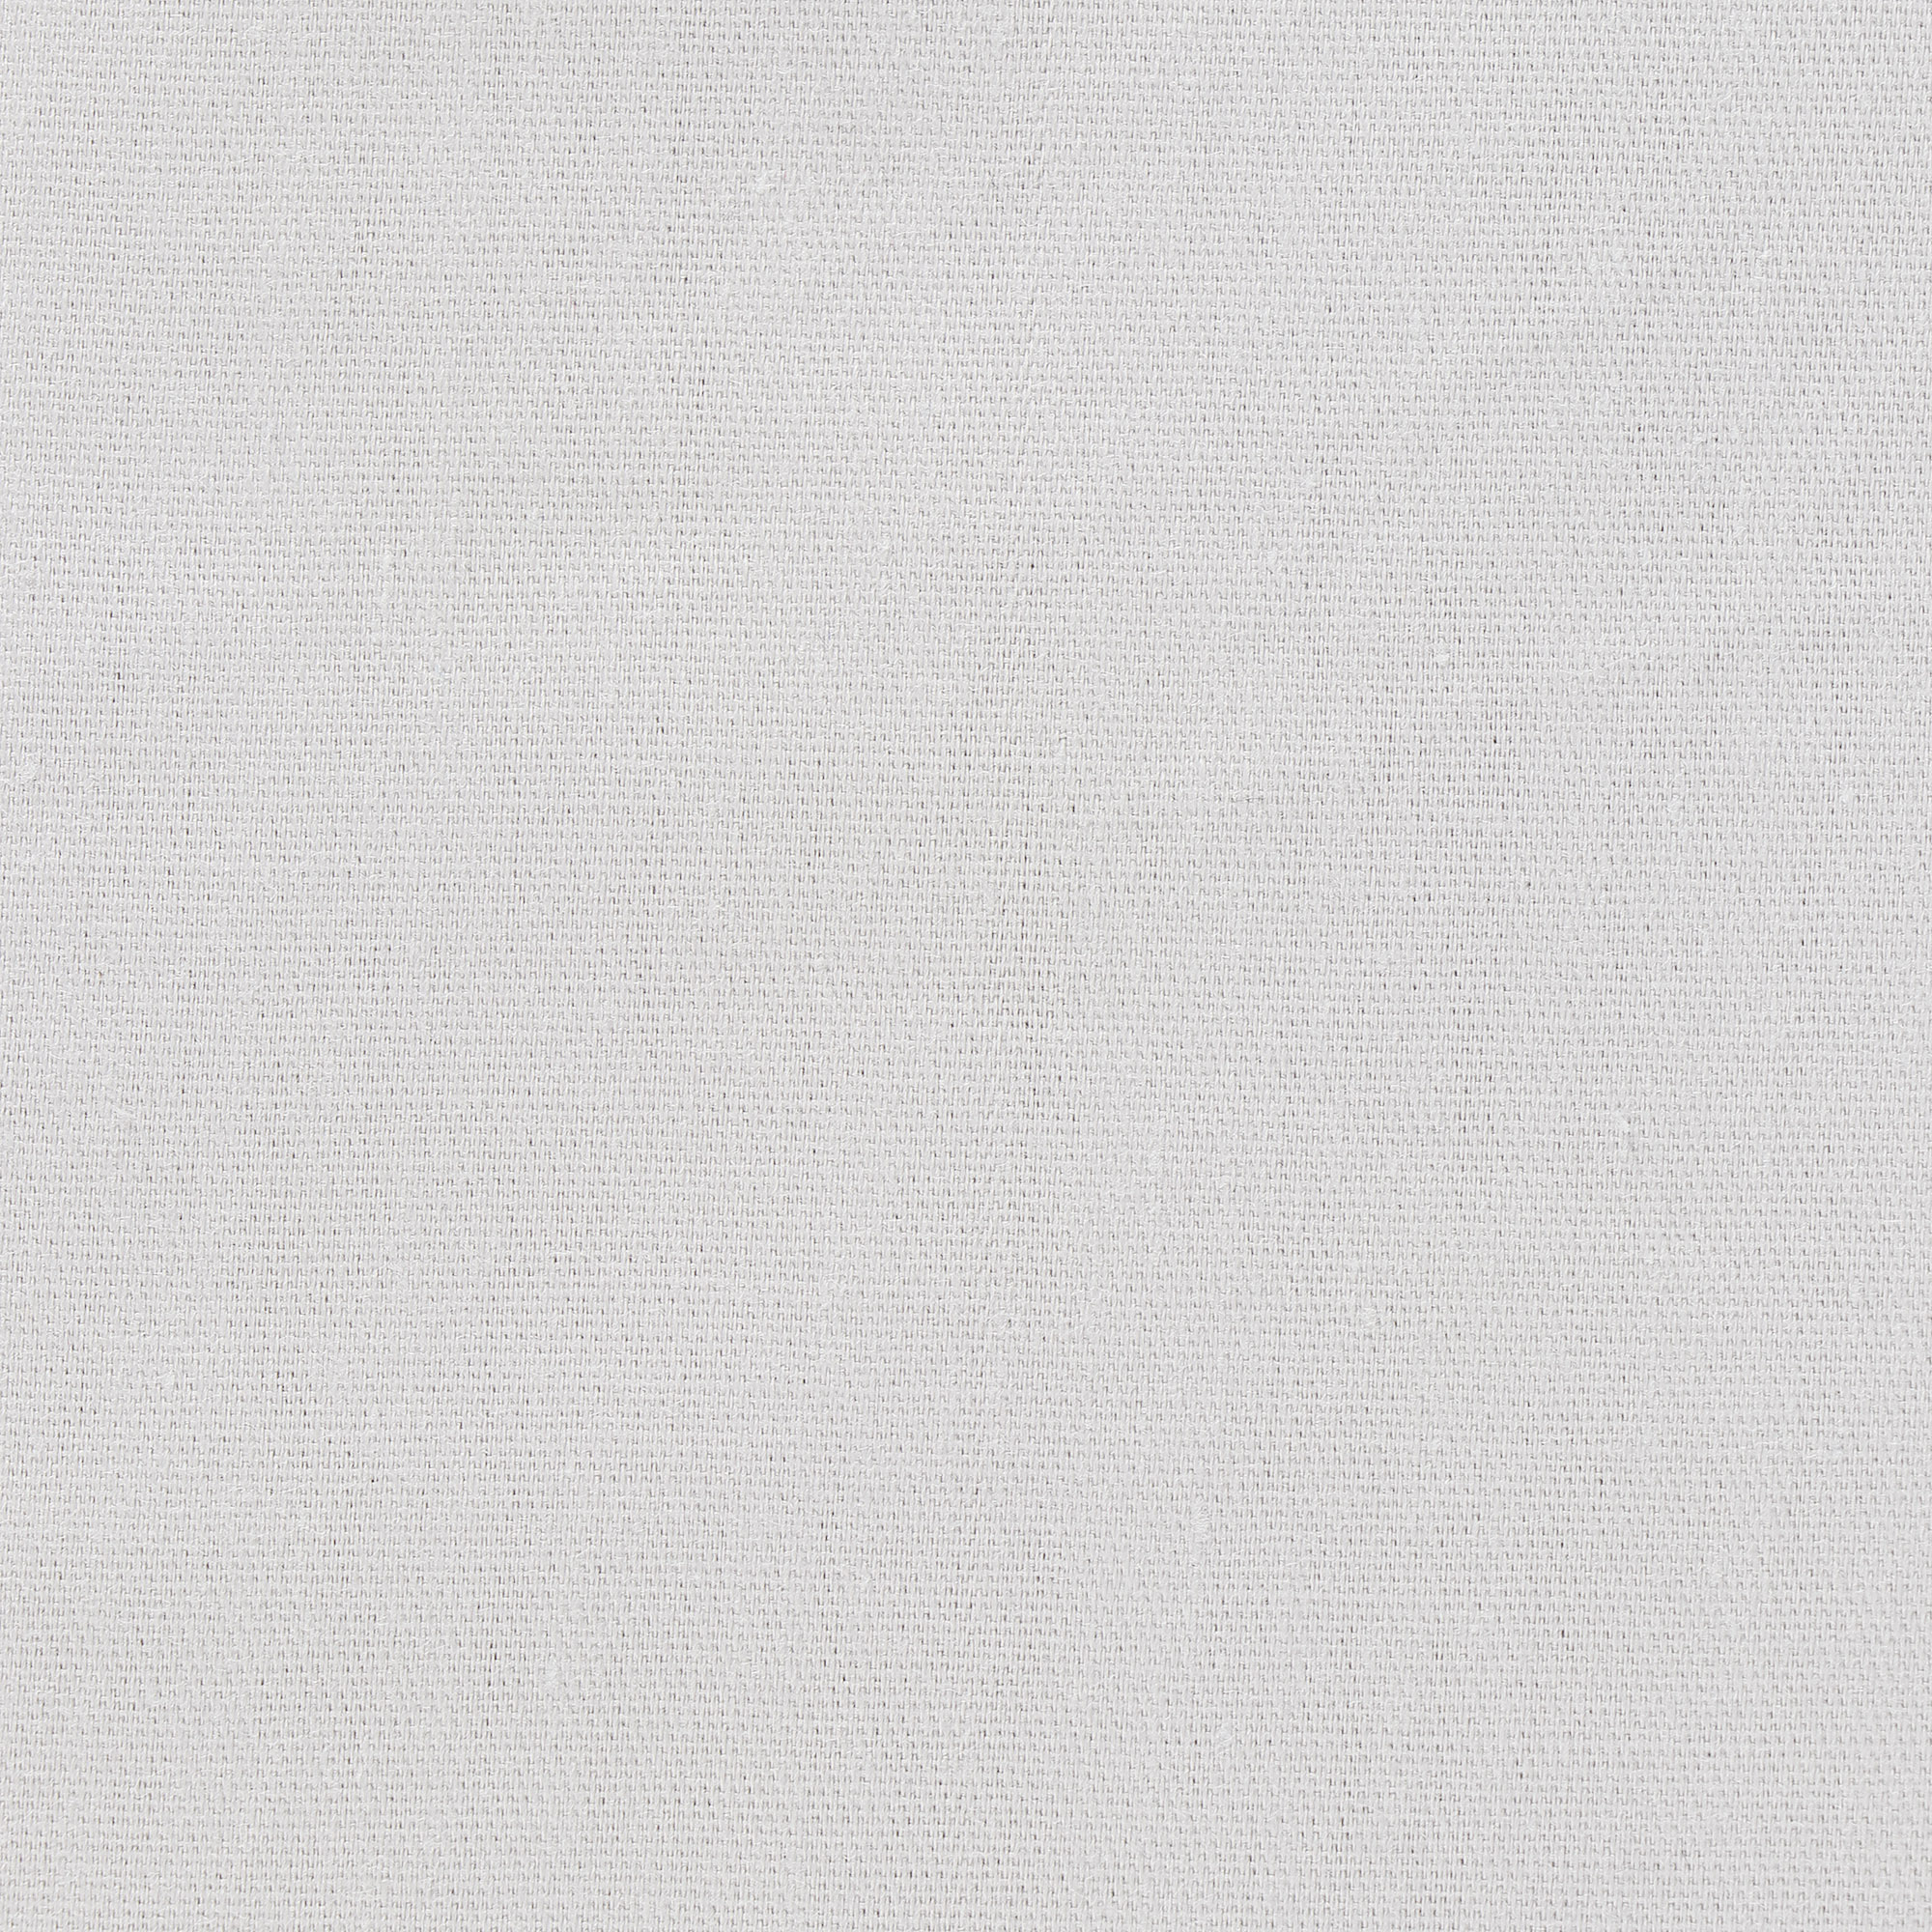 Постельный комплект MONA LIZA двуспальный евро 5206/5, цвет серый, размер Двуспальный евро - фото 2